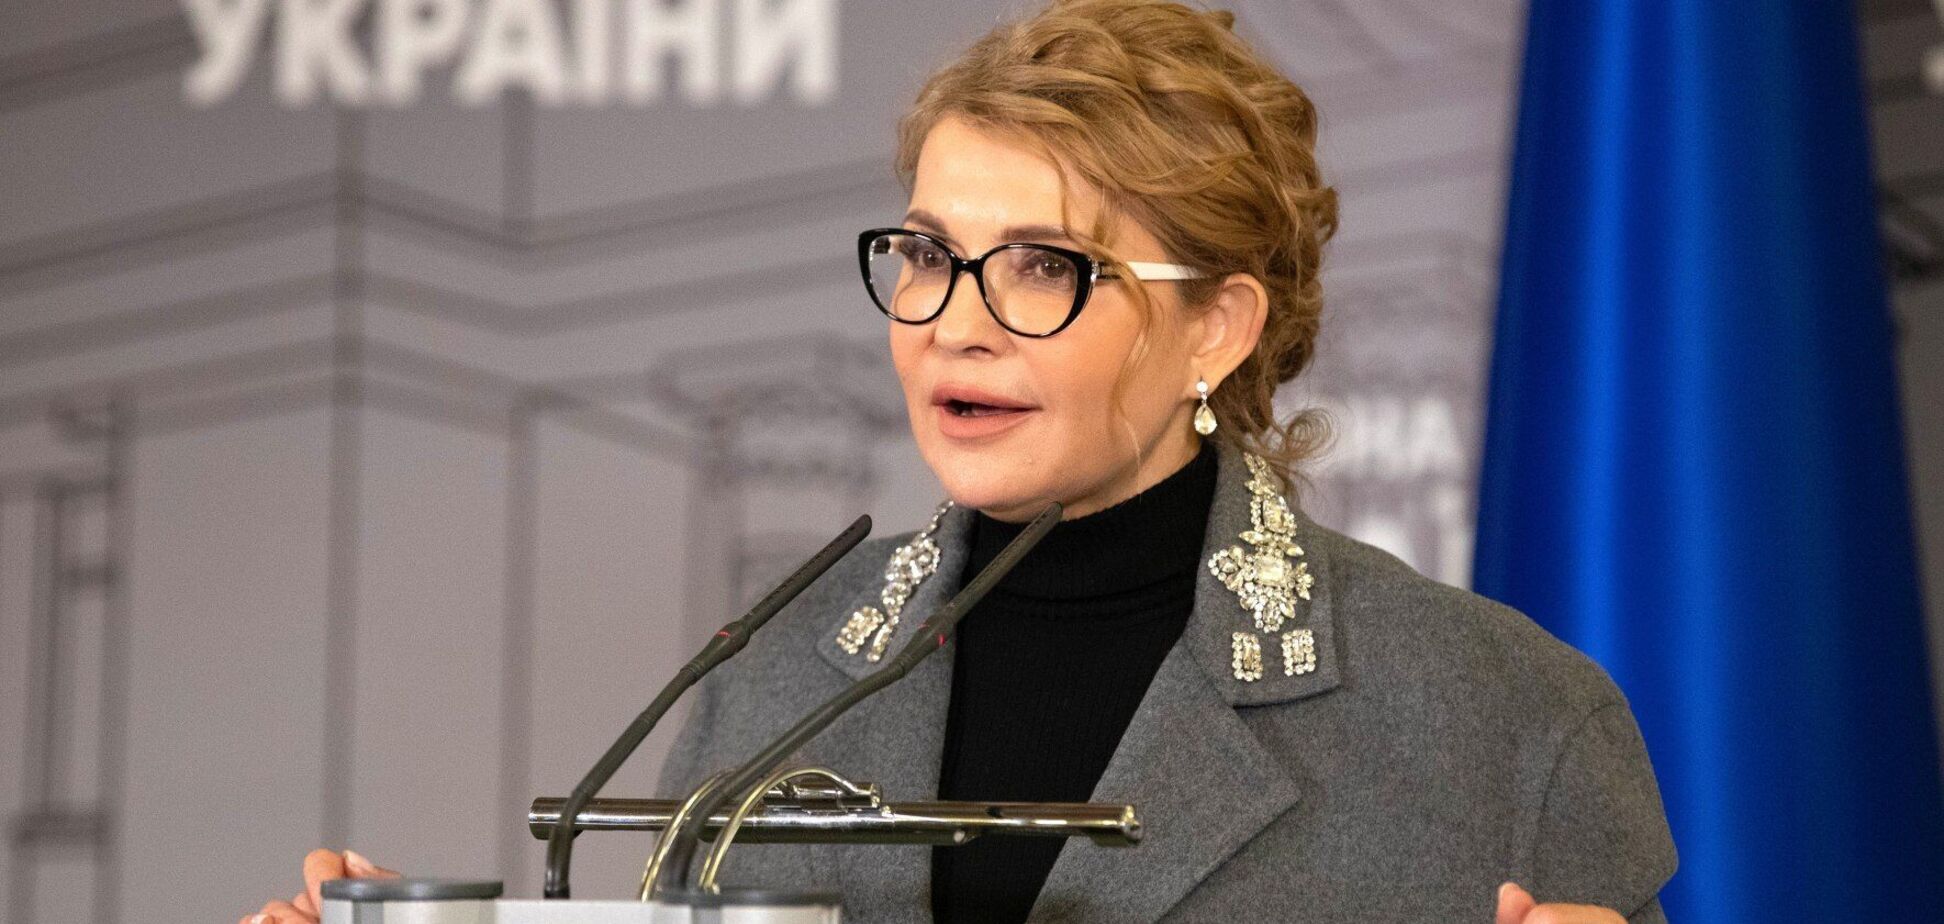 Тимошенко удалось выбить в бюджете-2021 десятки дополнительных миллиардов гривен для украинцев